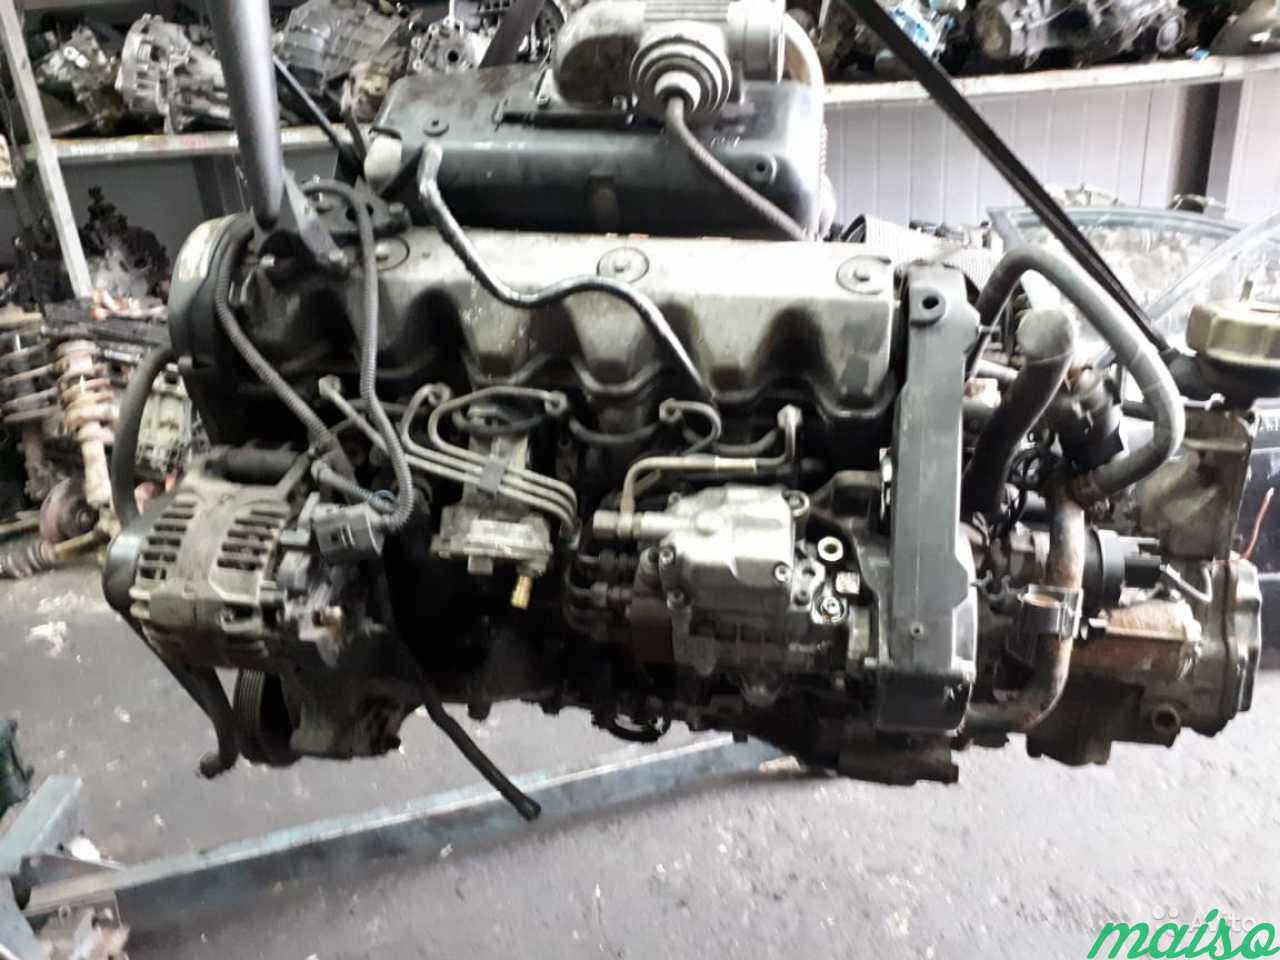 Двигатели фольксваген т5 2.5. Двигатель AJT 2.5 TDI. ДВС Фольксваген Транспортер 2.5. Фольксваген т4 2.5 тди AJT. Двигатель Фольксваген т4 2.5 дизель.